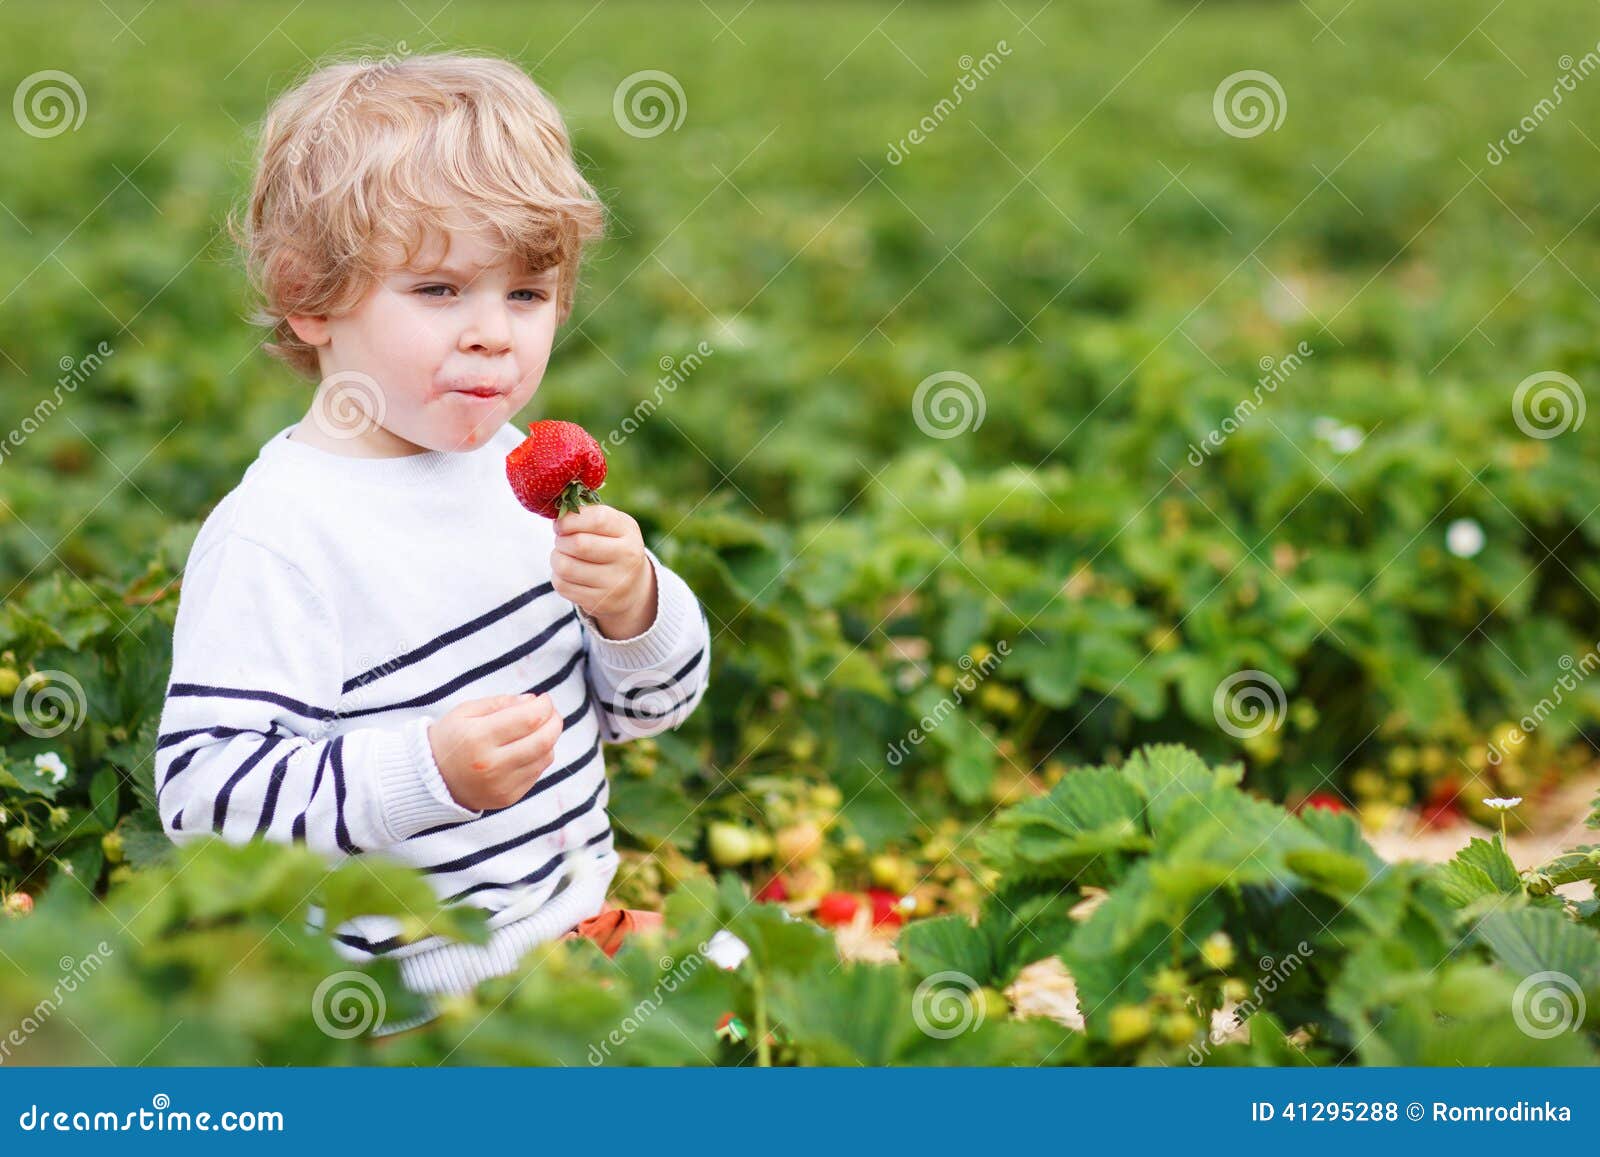 Мальчик м. Мальчик нюхает клубнику картинка. Мальчик ест огромную клубнику. Описание картинок мальчик ест клубнику на грядке. Каю ел клубнику.